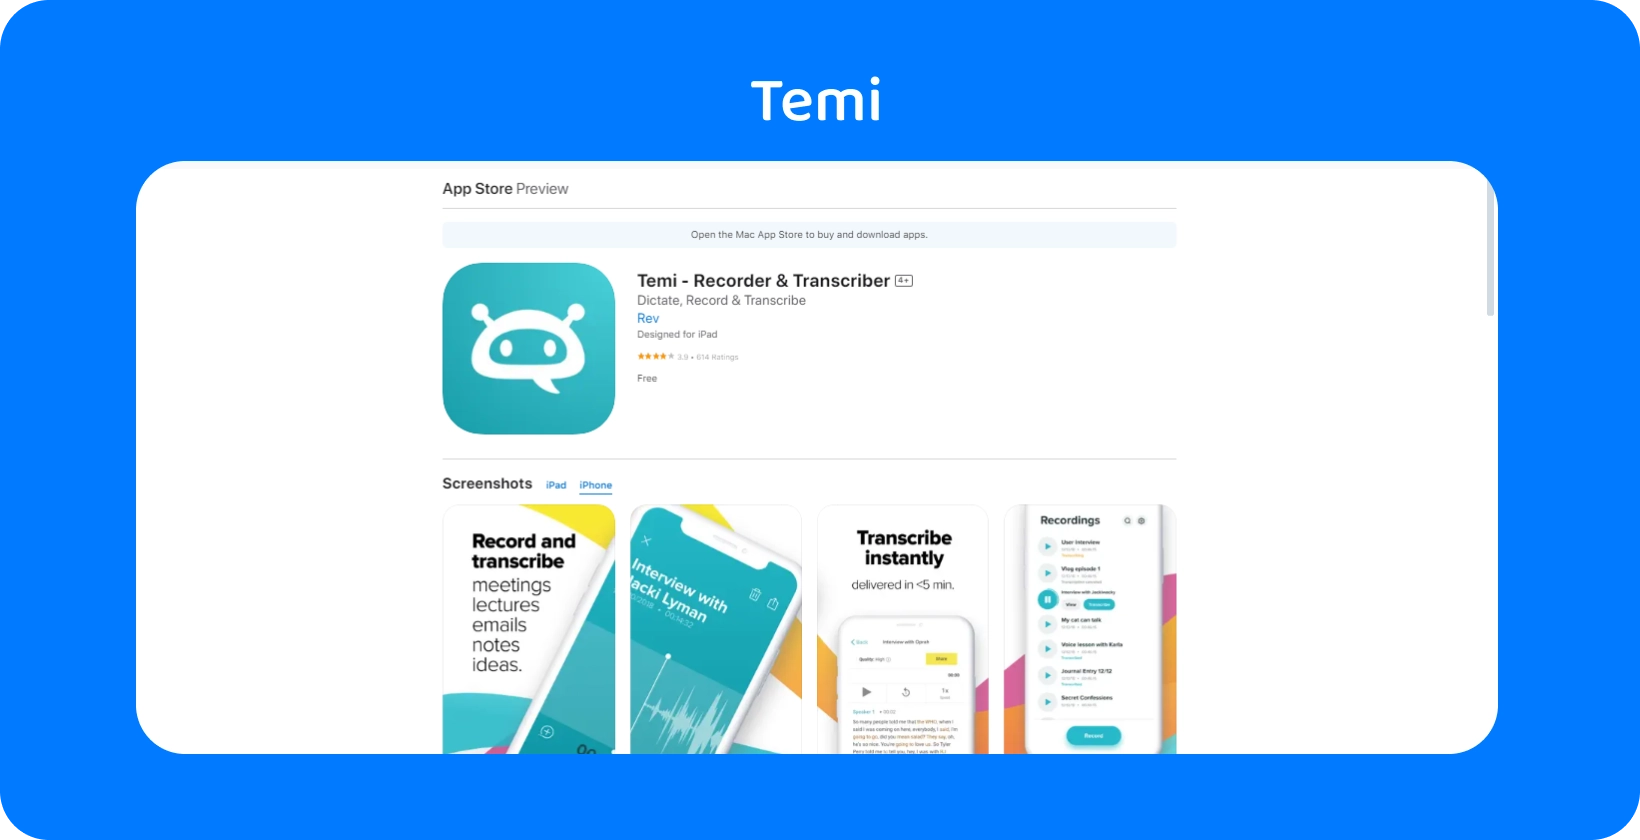 ภาพหน้าจอของรายชื่อ Temi App Store โดยเน้นคุณสมบัติการบันทึกที่รวดเร็วและการถอดความทันที